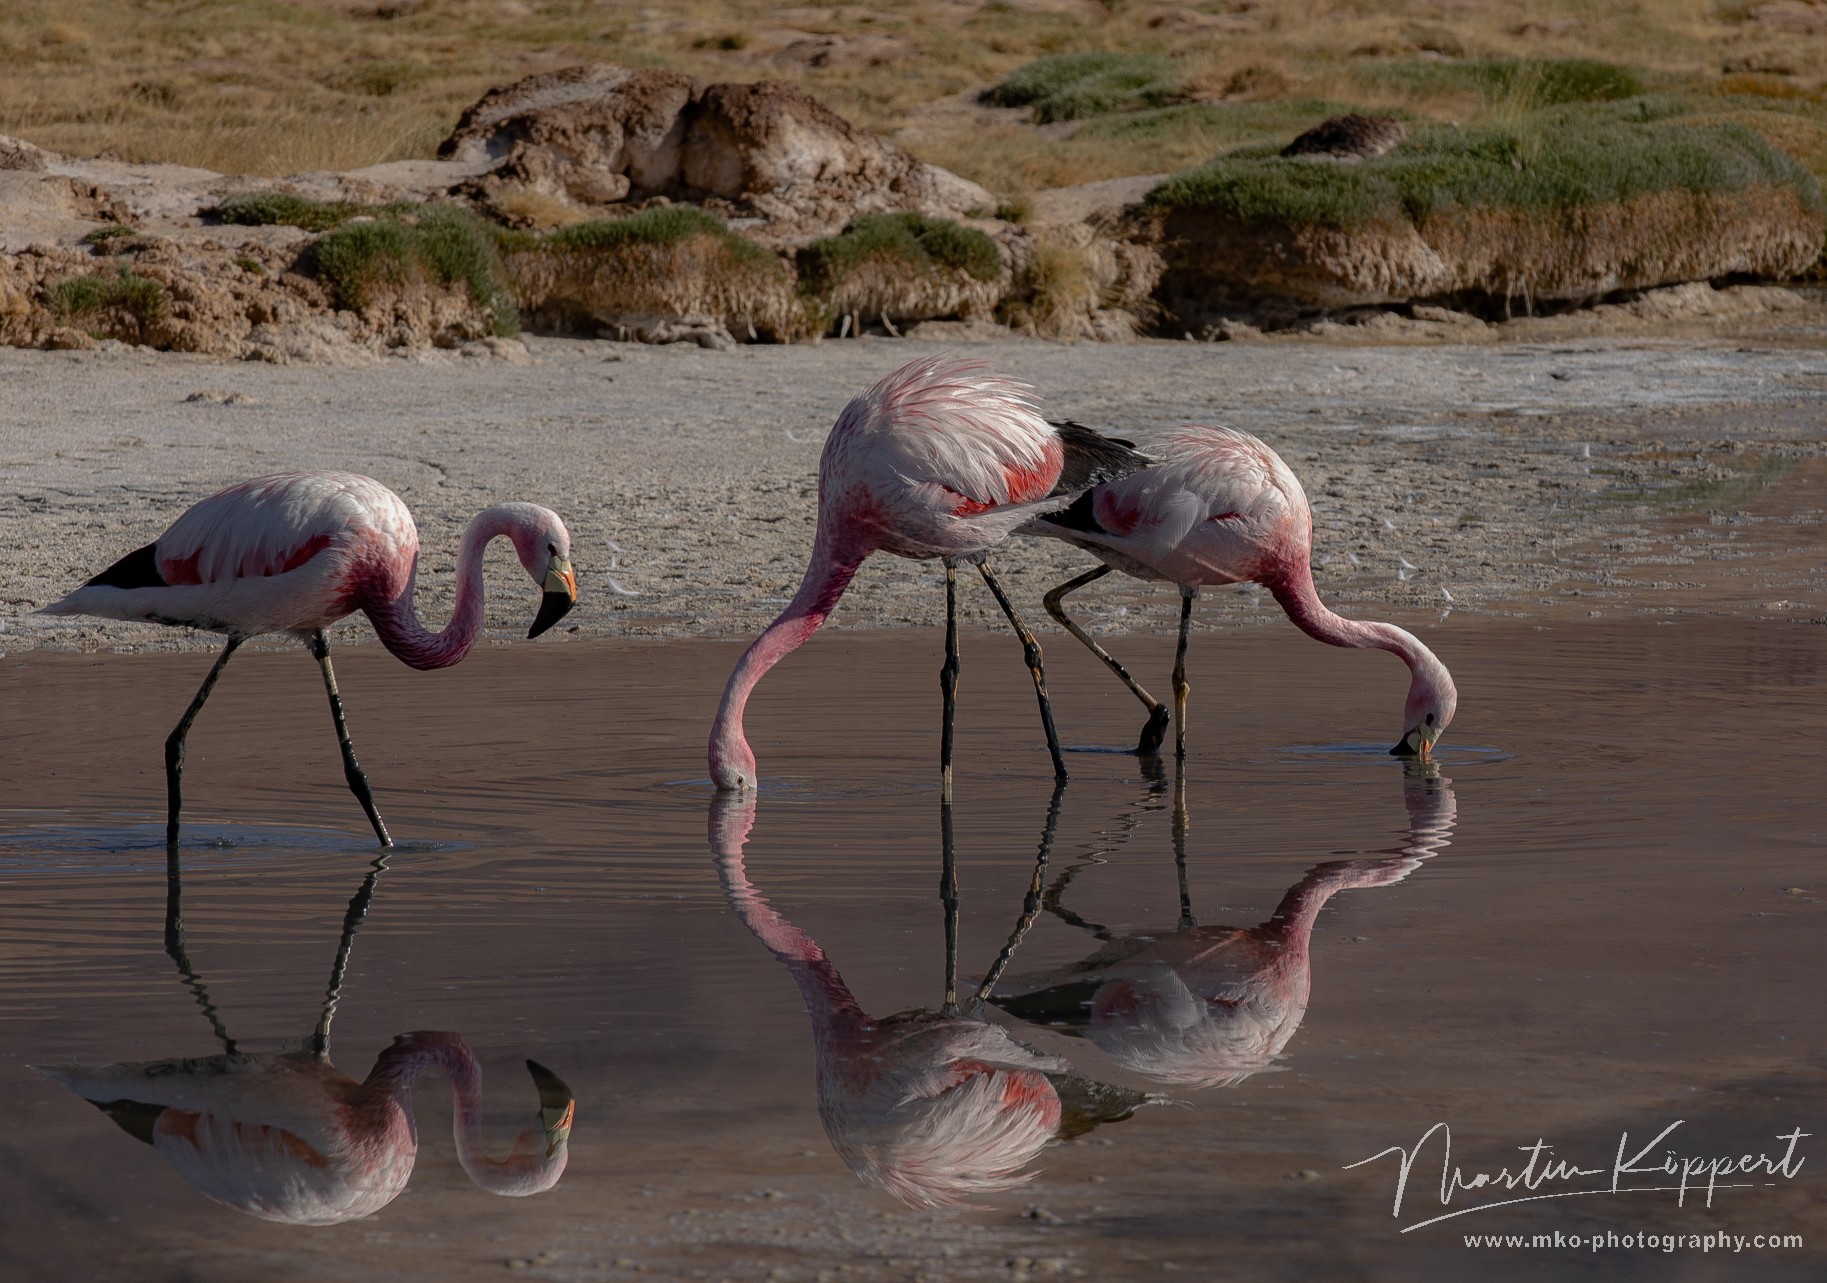 7P8A7706 Flamingo Laguna Santa Rosa Pn Tres Cruces Desierto de Atacama Chile